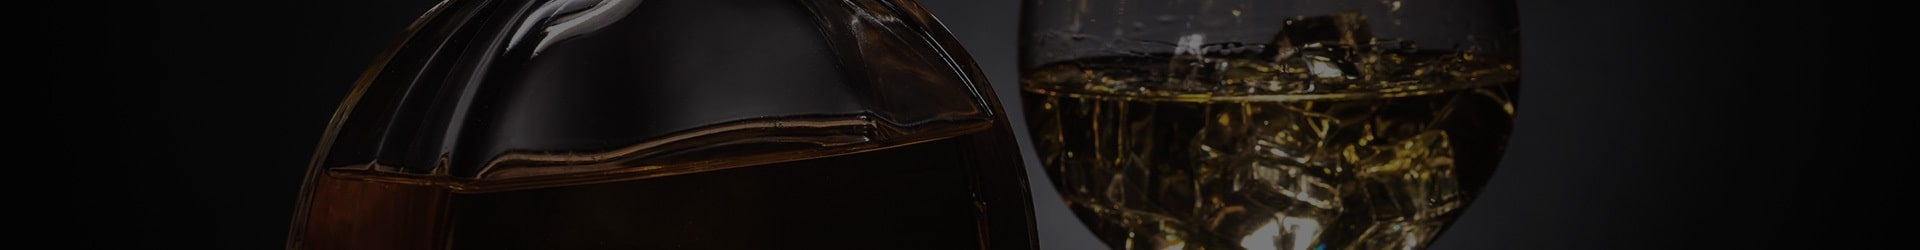 Our Selection of Cognac Under €100|Shop Online